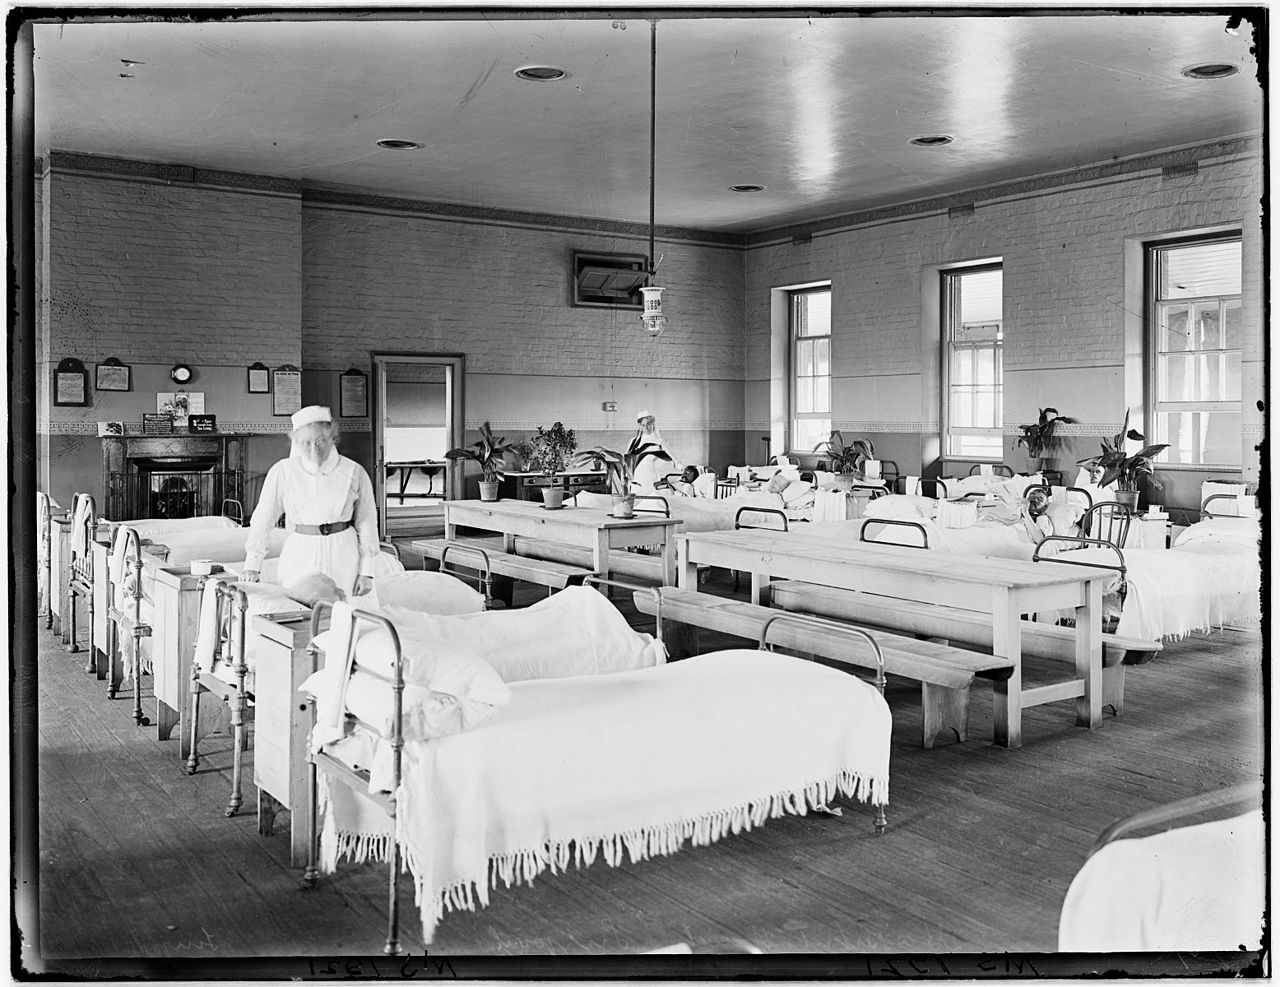 Old hospital ward